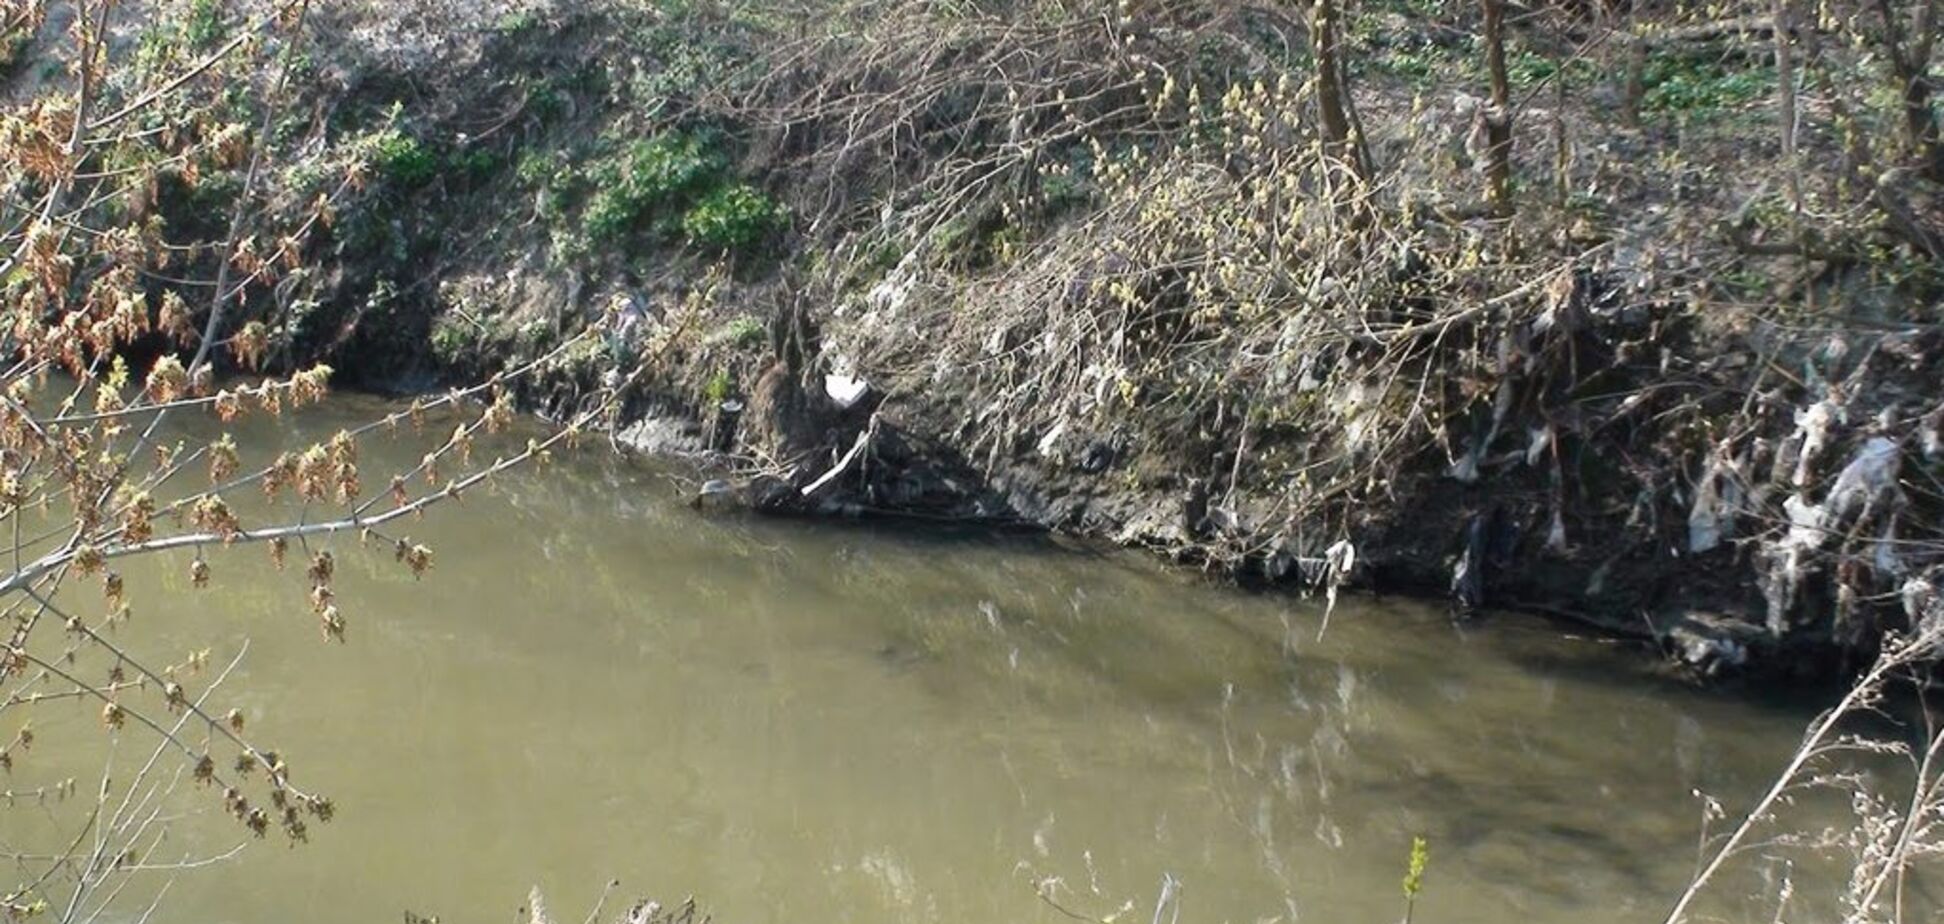 Много хлама, грязная вода: гидролог рассказал о состоянии рек в Украине